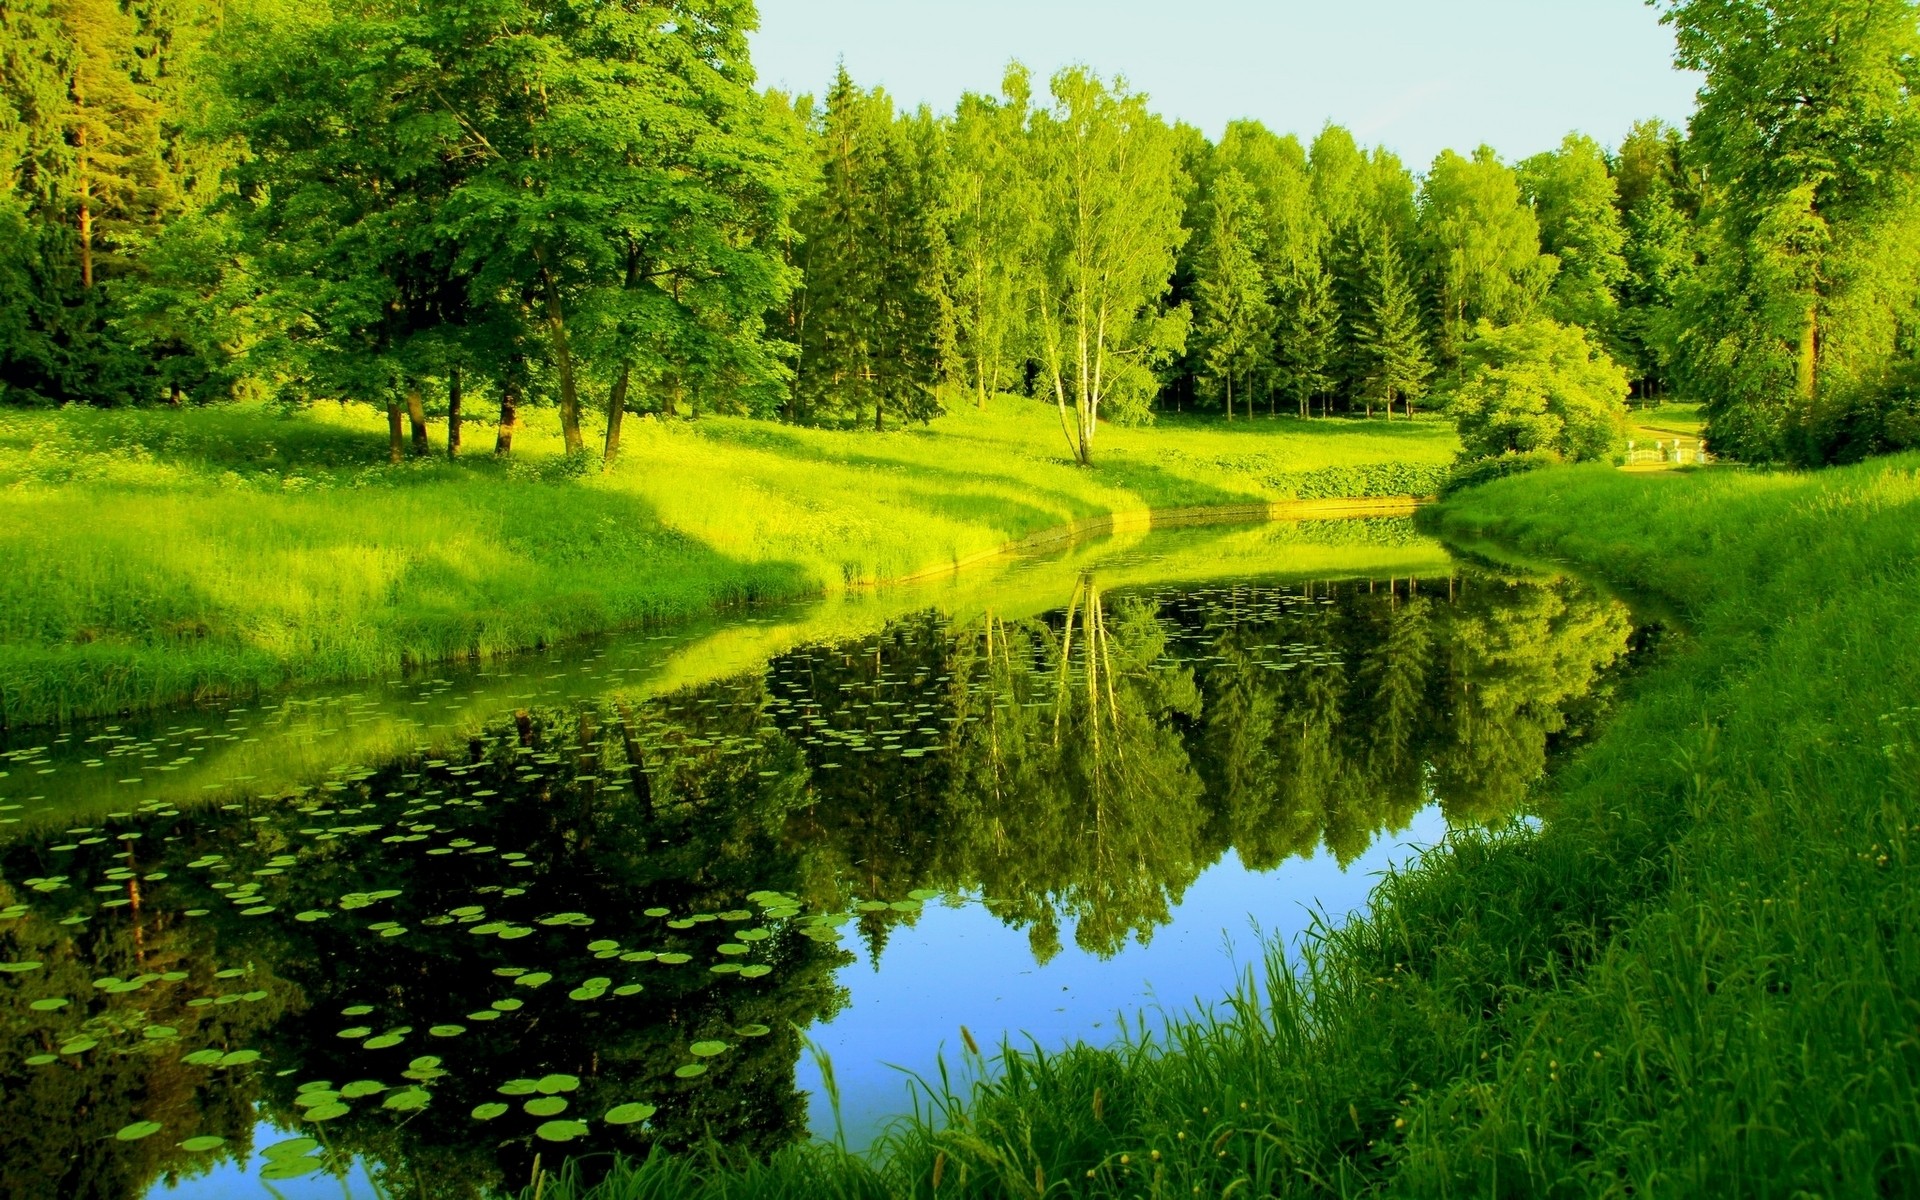 пейзажи пейзаж дерево природа трава древесины на открытом воздухе живописный лето сельских сельской местности дневной свет сенокос идиллия среды лист воды парк лес озеро